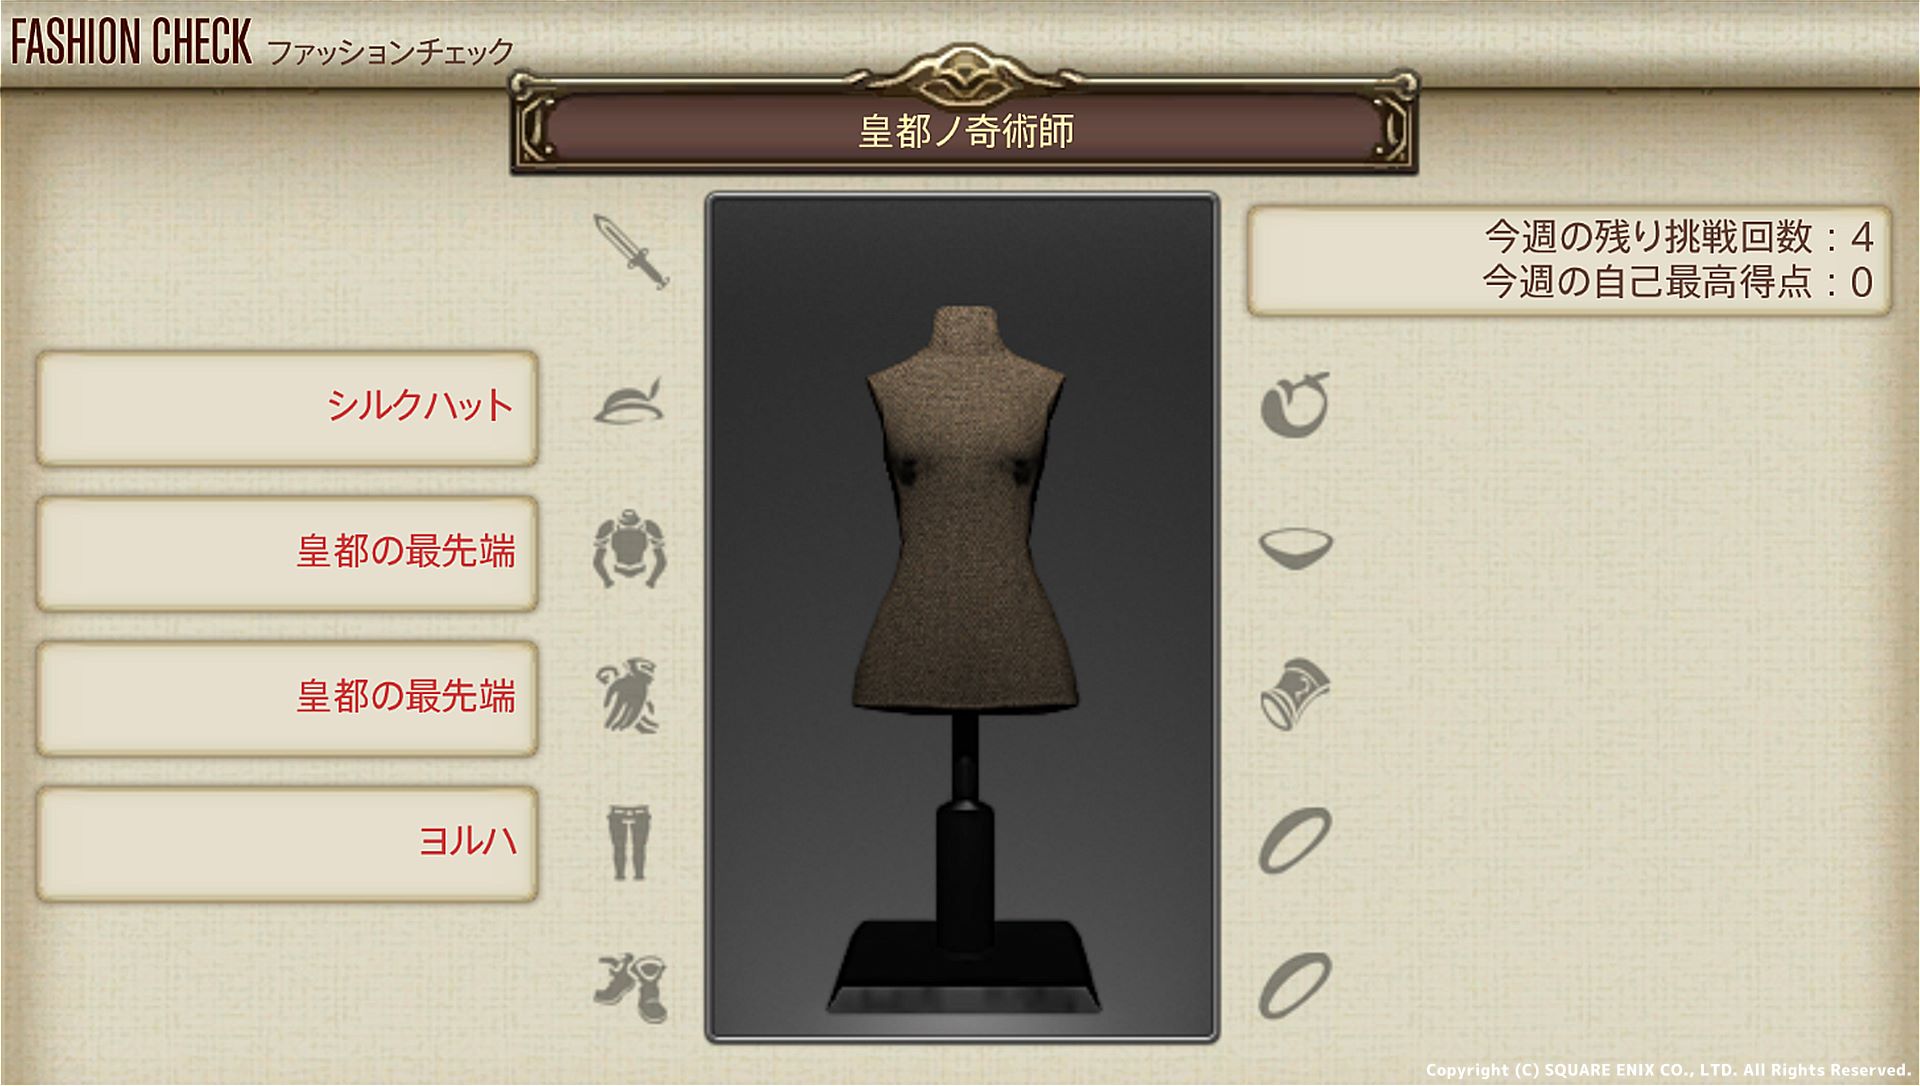 【FF14】ファッションチェック 11月21日発表のテーマは？「皇都ノ奇術師」